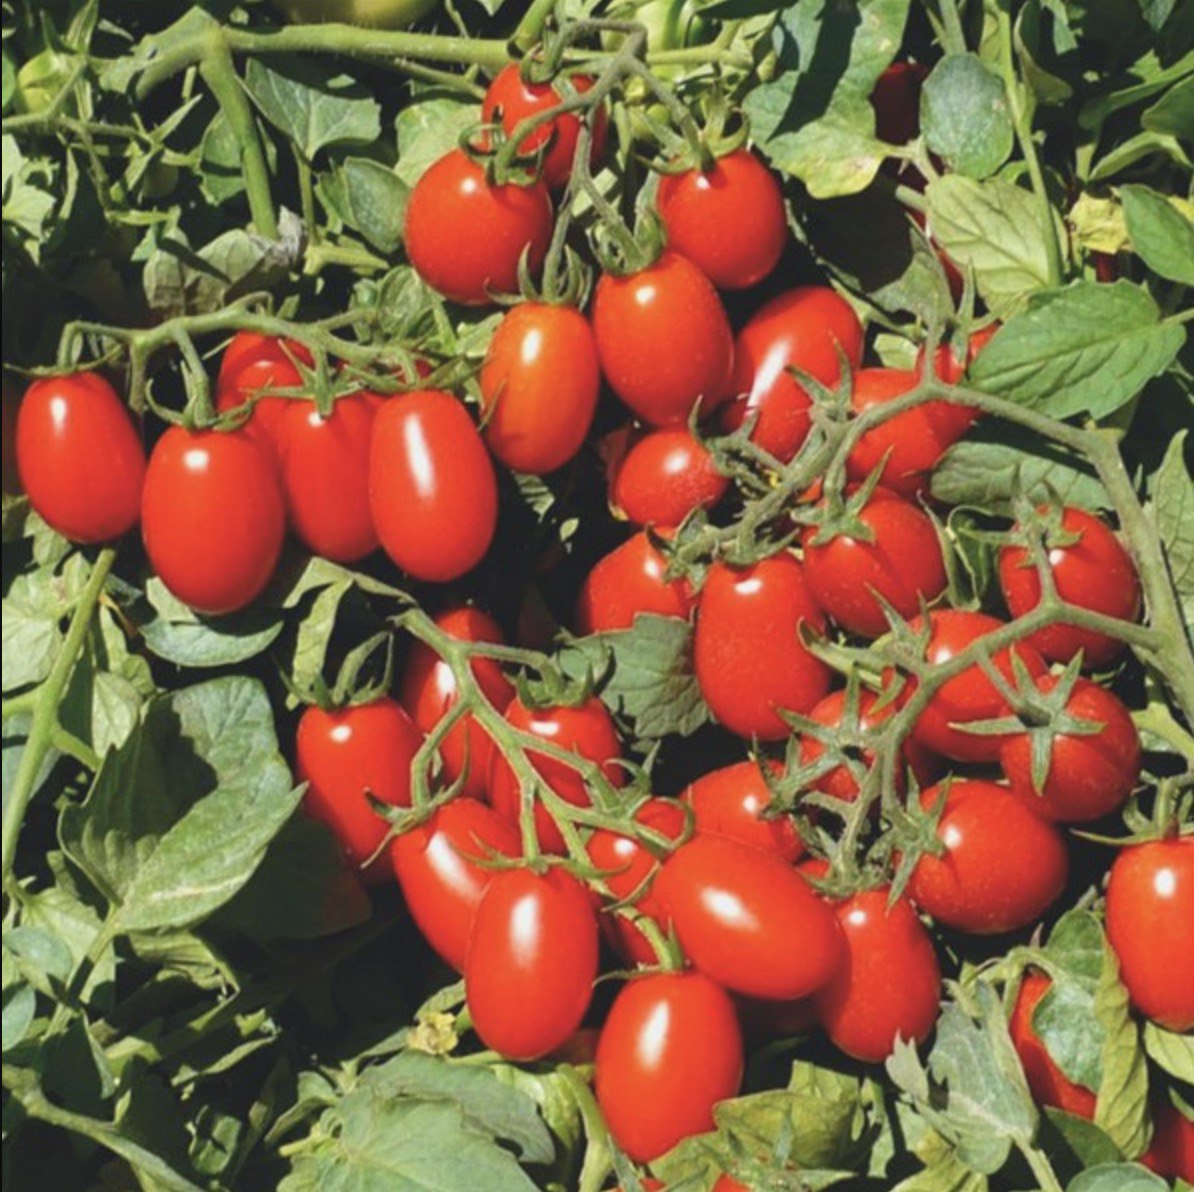 томаты сорт чудо земли фото